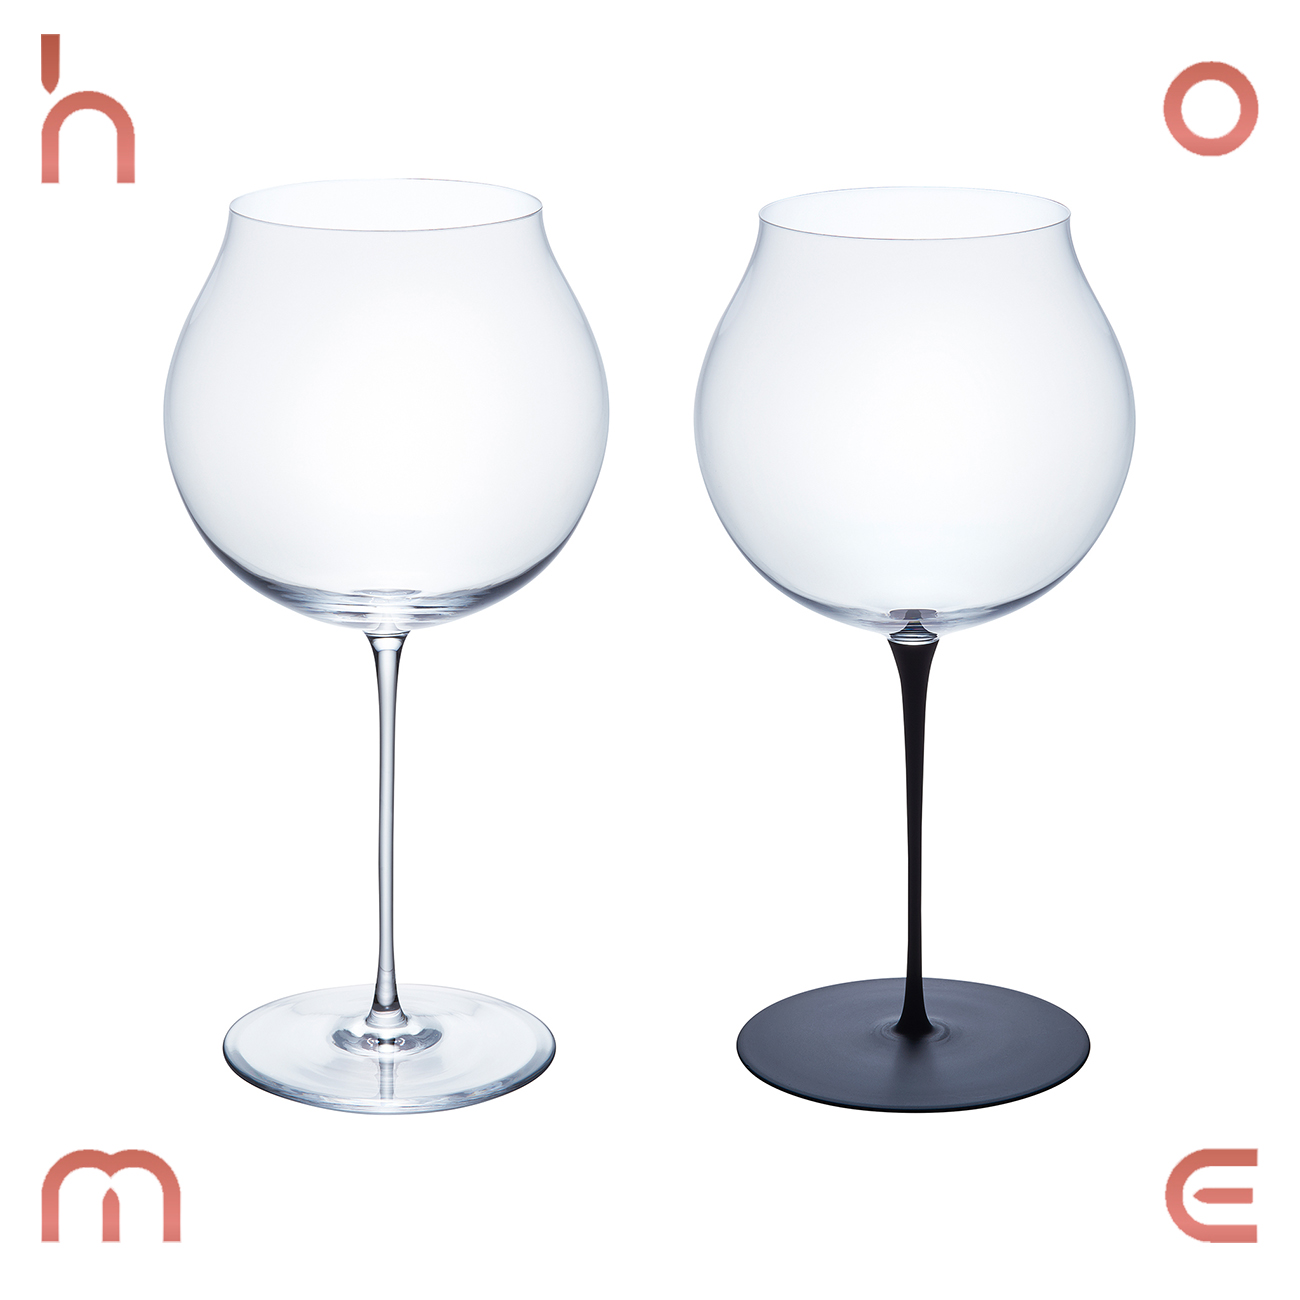 现货 日本制SGHR 新品 幸纯手工玻璃磨砂黑脚透明葡萄红酒杯 礼品